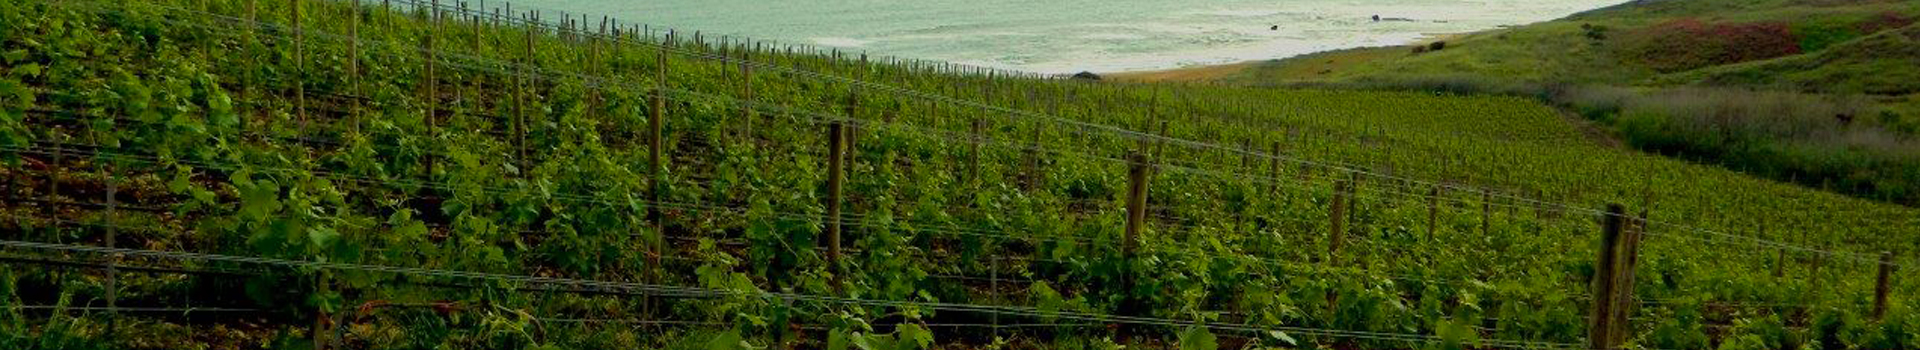 瑰丽玛蕾酒庄海边葡萄园的魅力